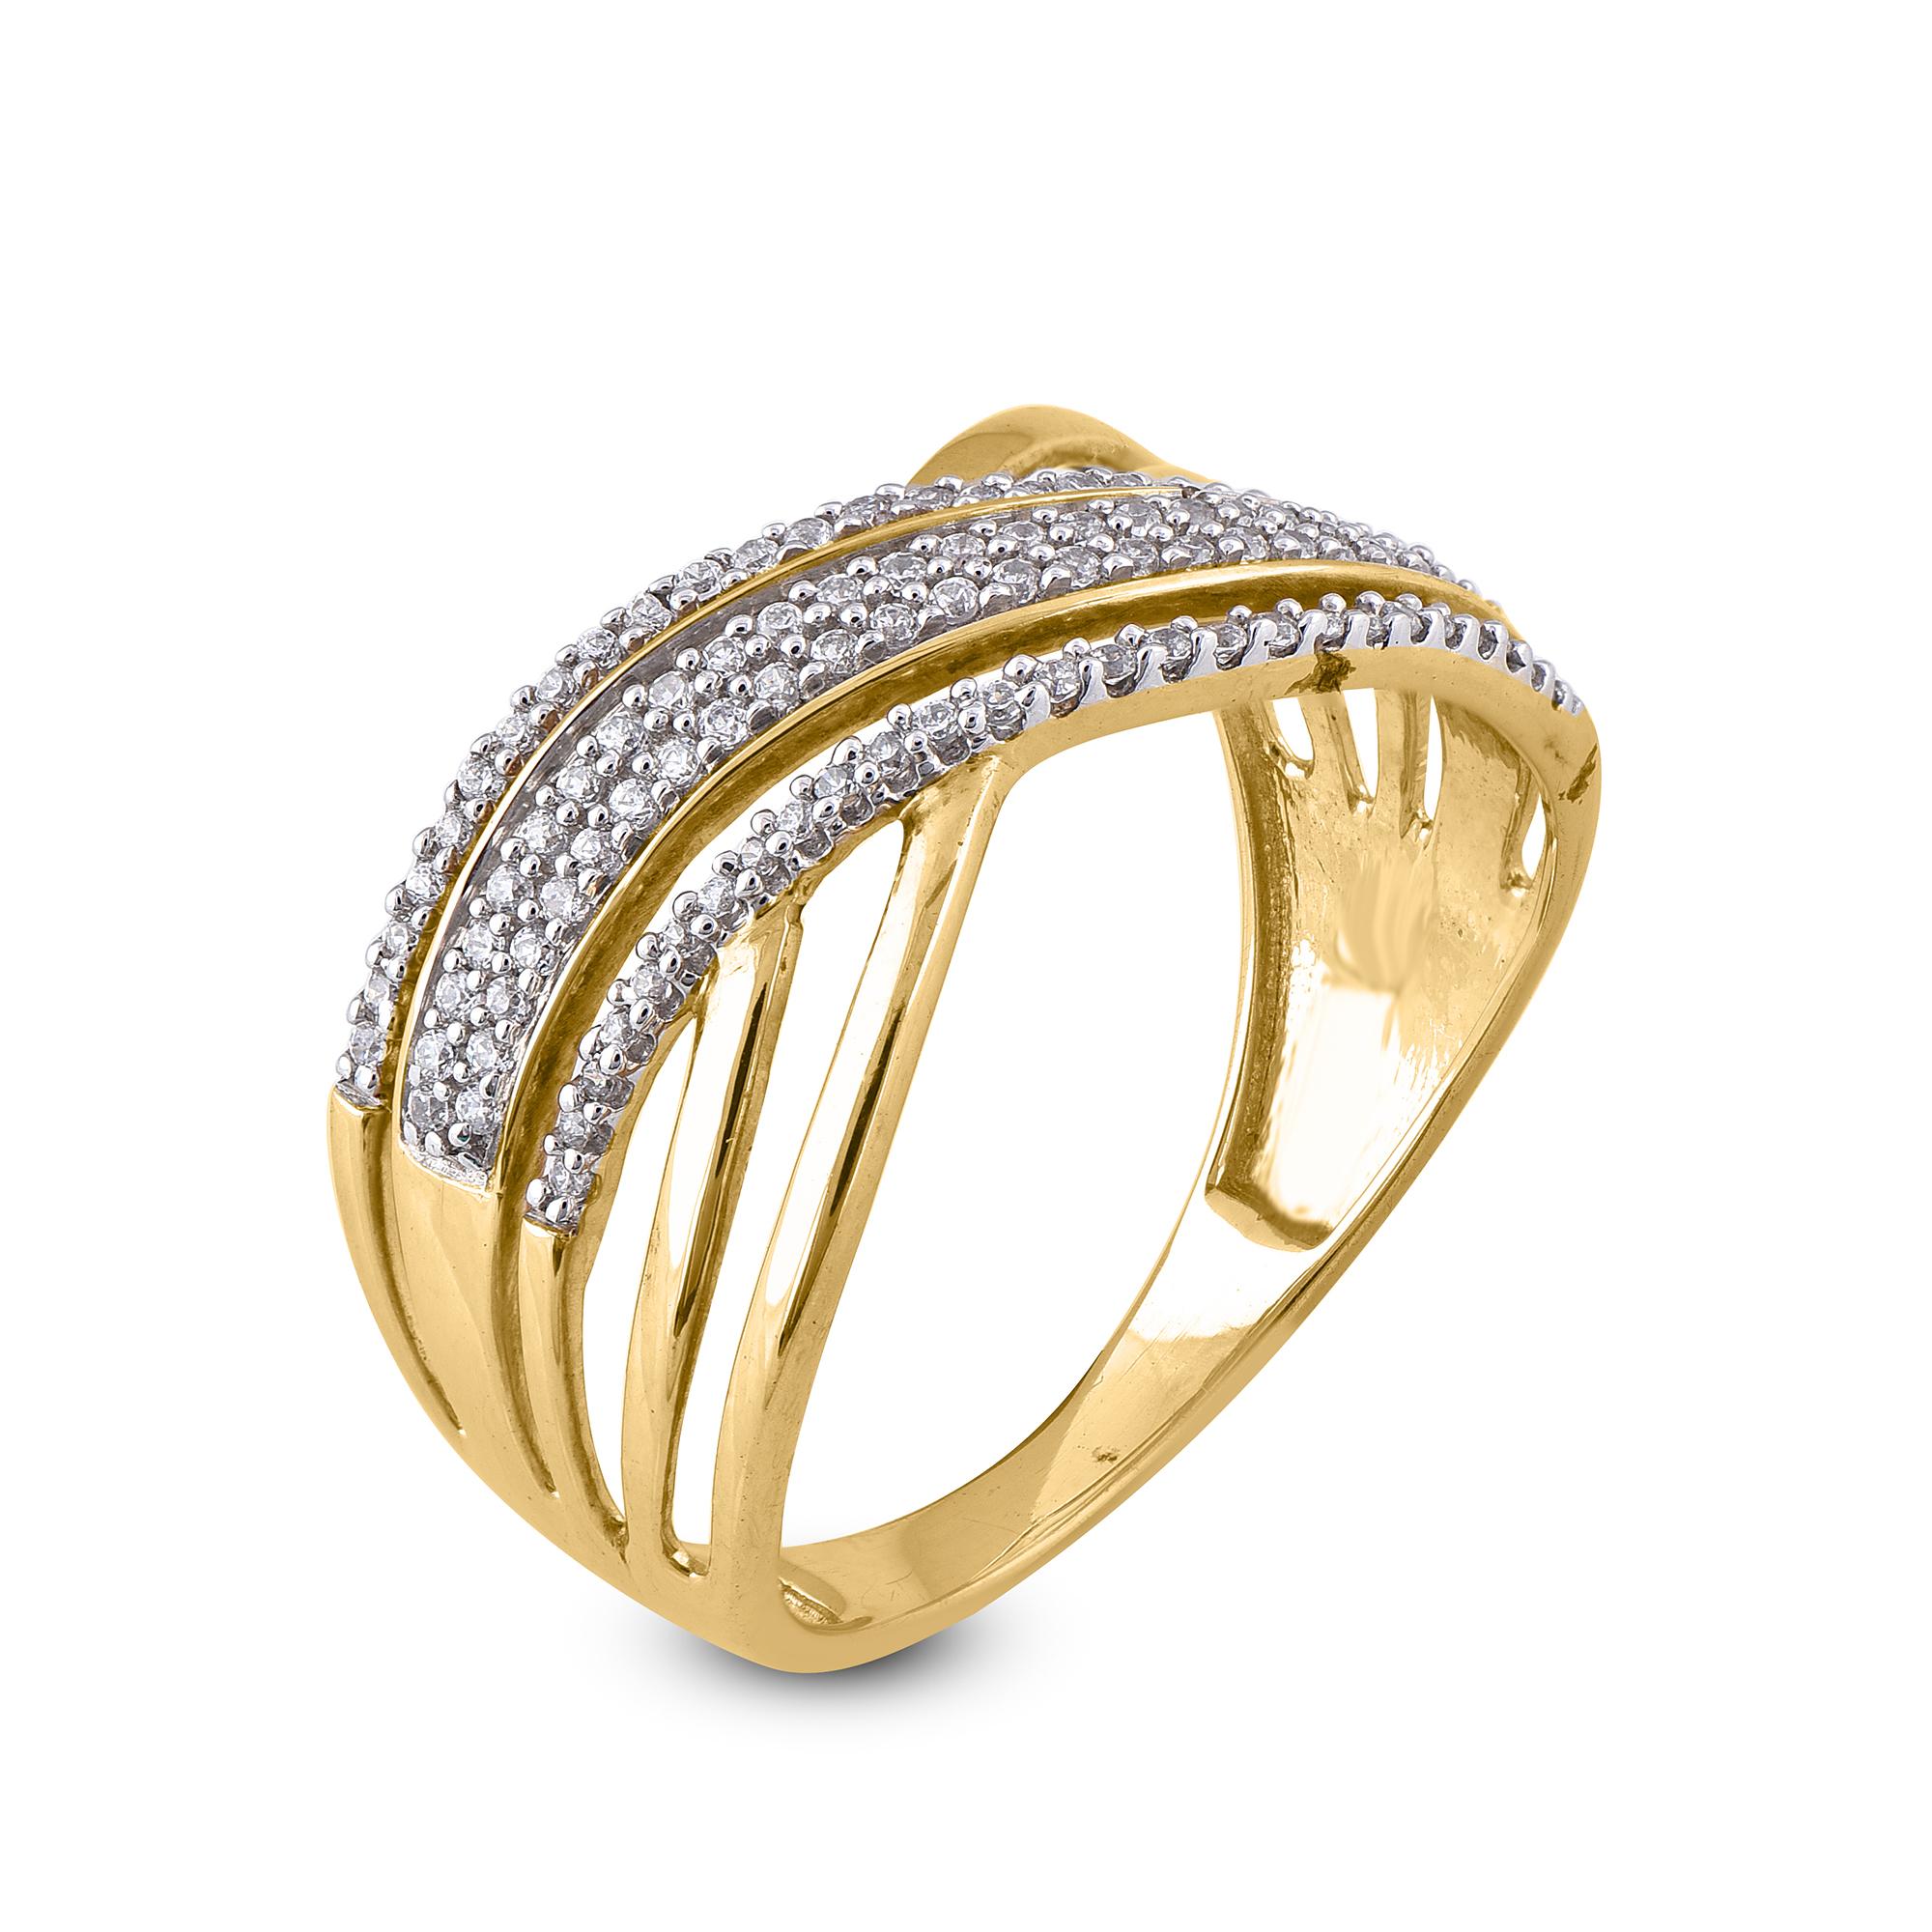 Dieser wirklich exquisite, wellenförmige, kreuzförmige Diamant-Hochzeitsring wird wegen seiner klassischen Schönheit und Eleganz bewundert werden. Das Gesamtgewicht der Diamanten 0,25 Karat, besetzt mit 102 runden Brillanten in Pave- und